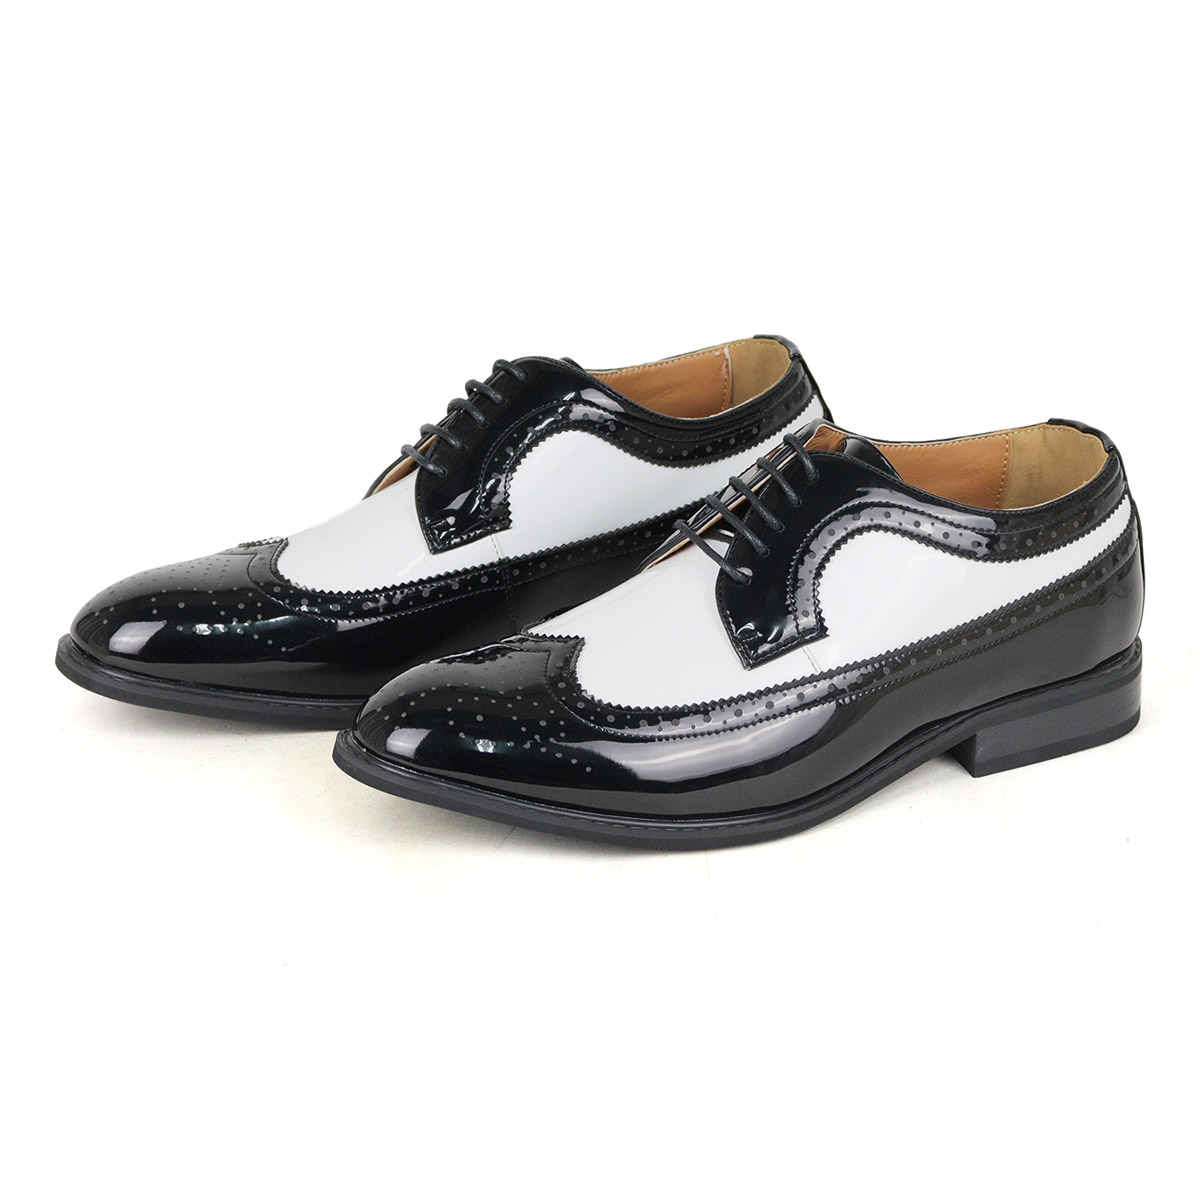 オックスフォードシューズ メンズ 革靴 黒 ウイングチップ 24.5-30cm No.802 セット...